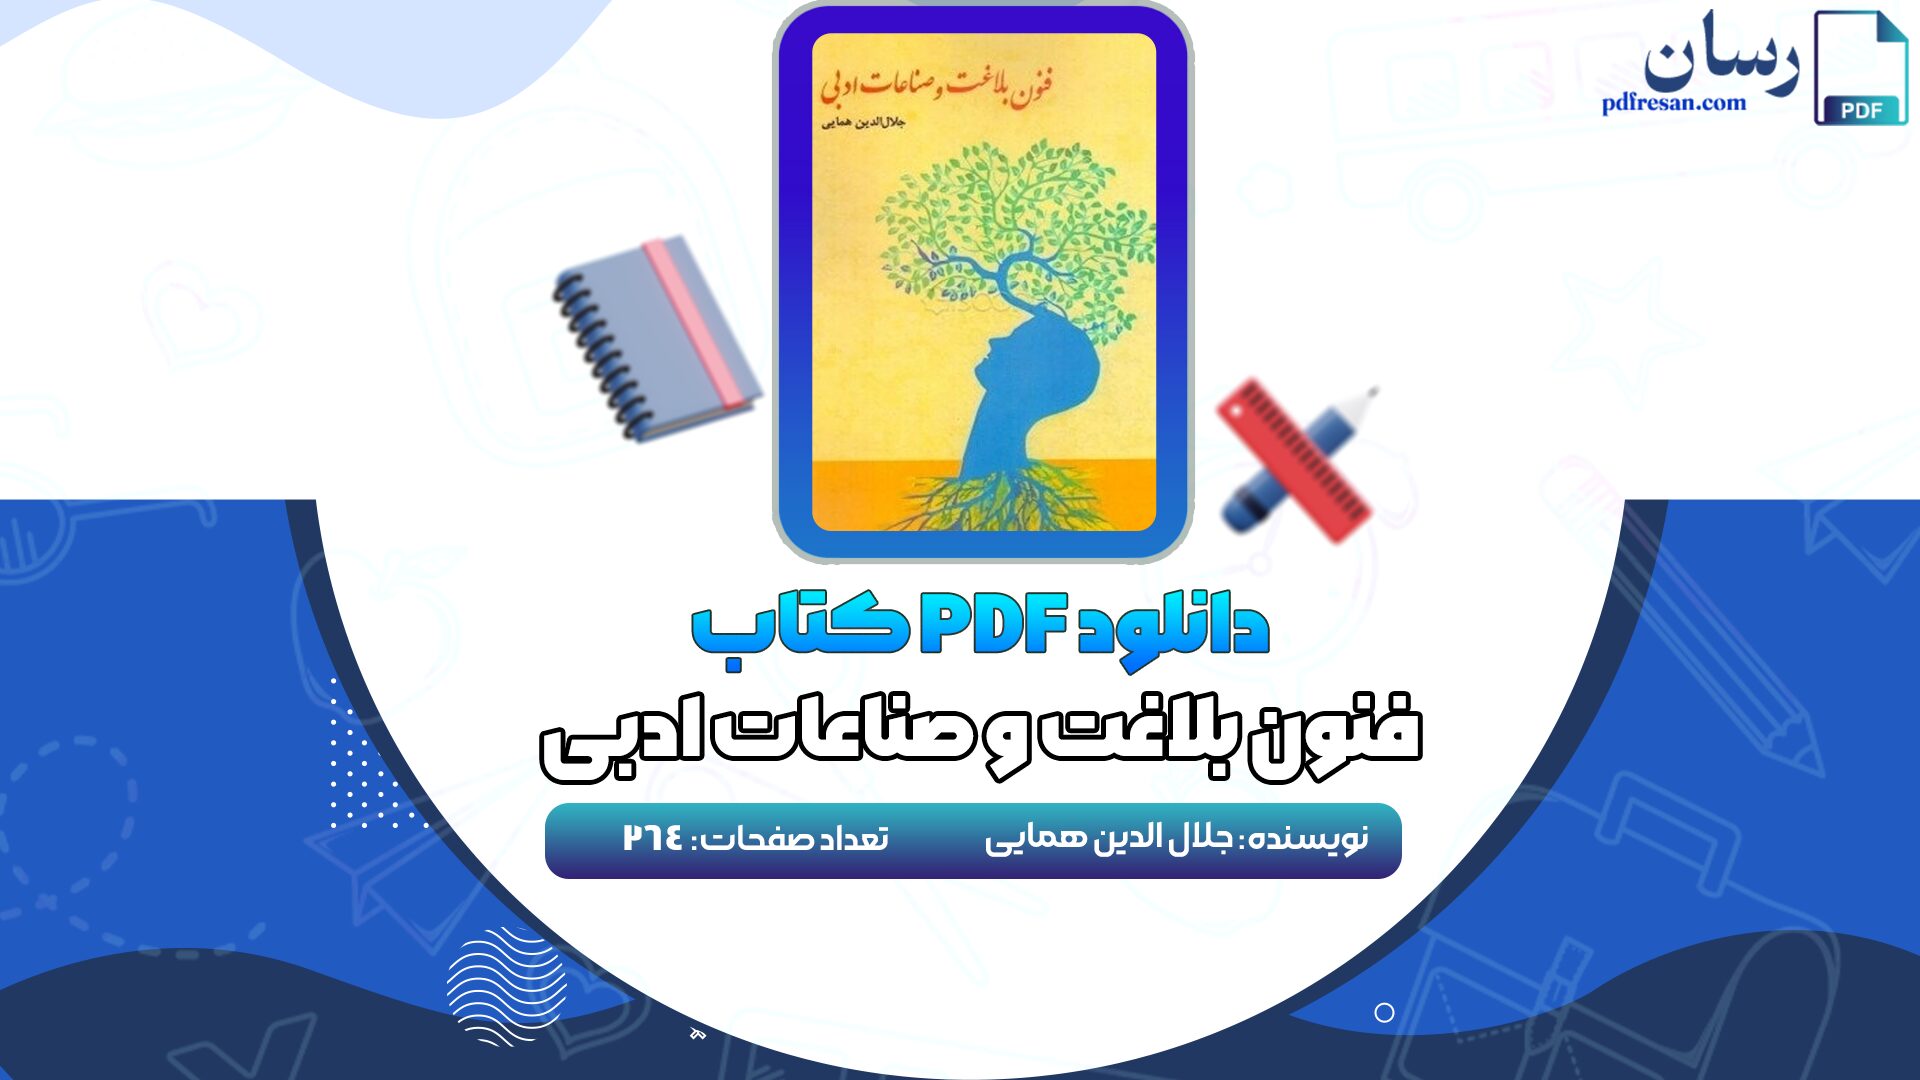 دانلود کتاب فنون بلاغت و صناعات ادبی جلال الدین همایی PDF